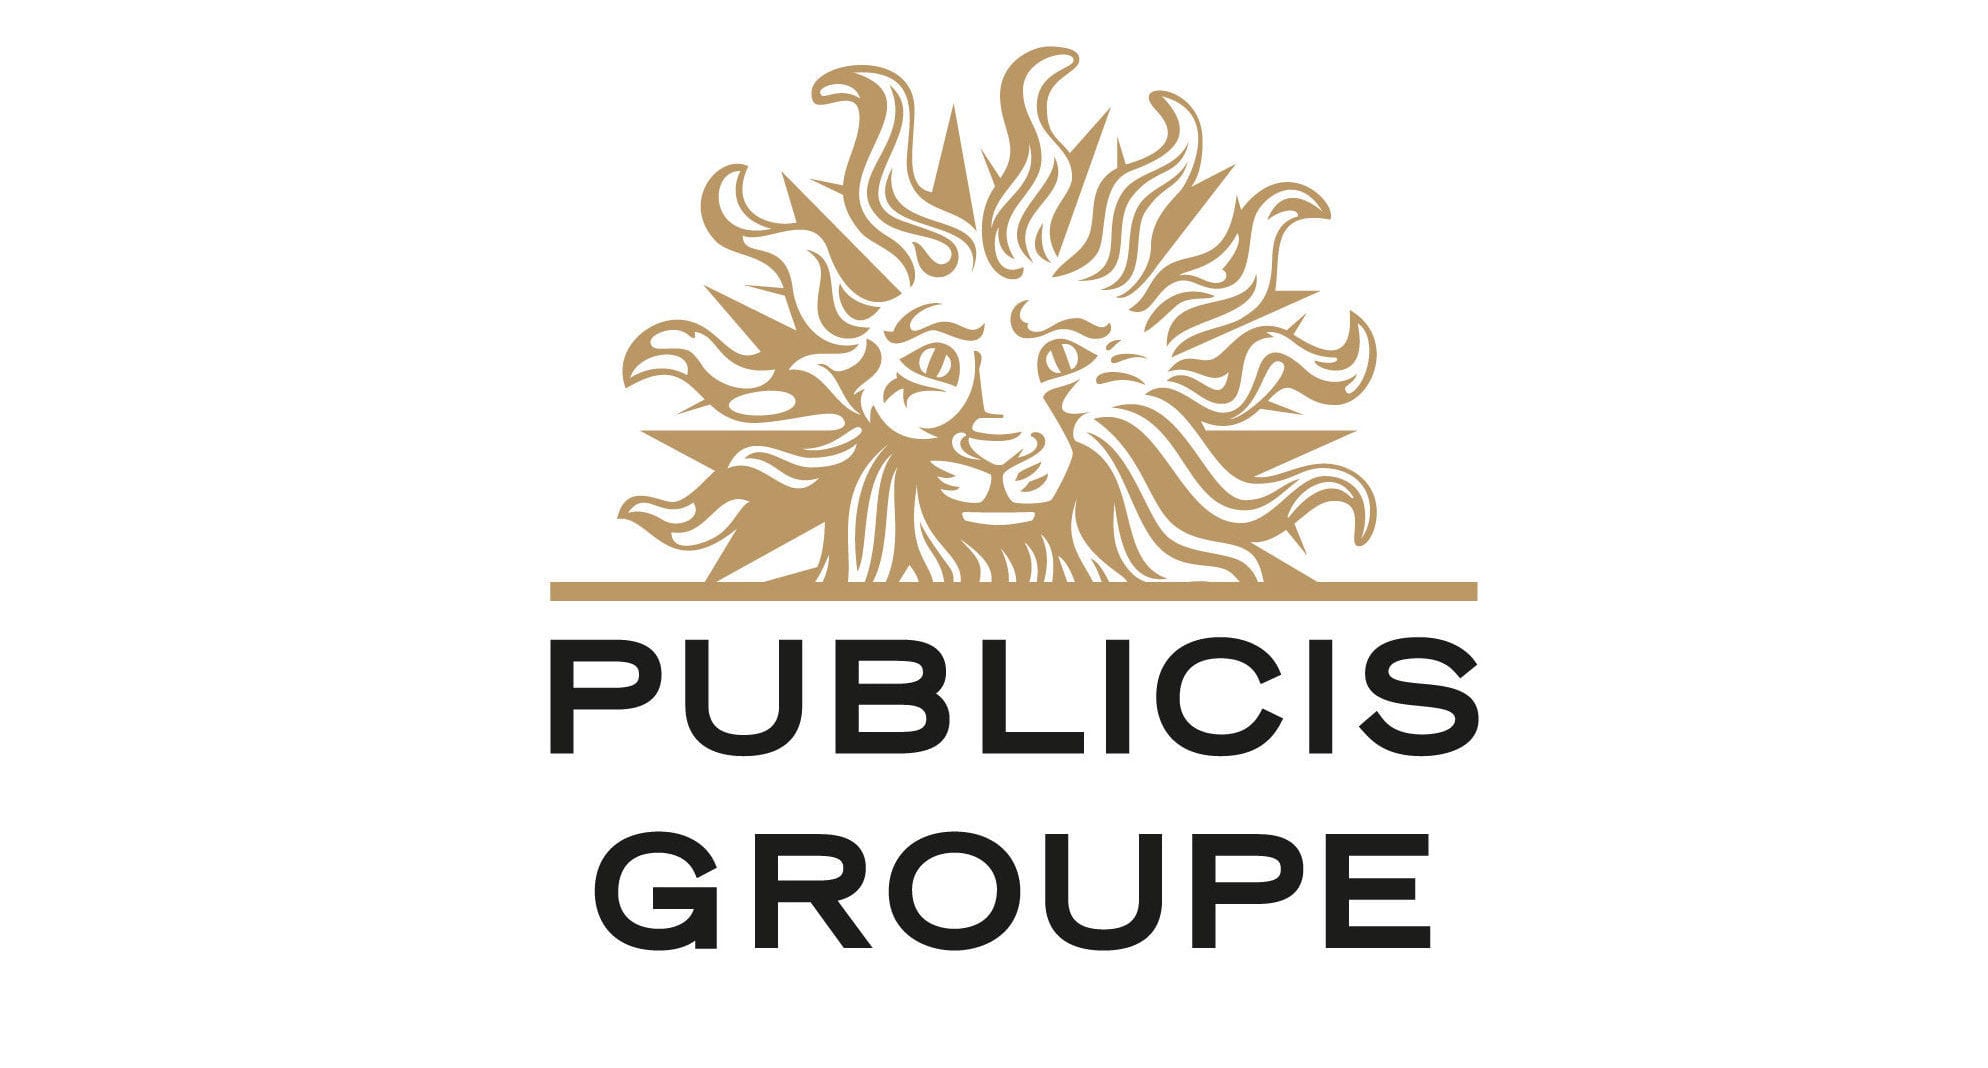  Publicis Groupe lancia “the pact”, il servizio con garanzia soddisfatti o rimborsati